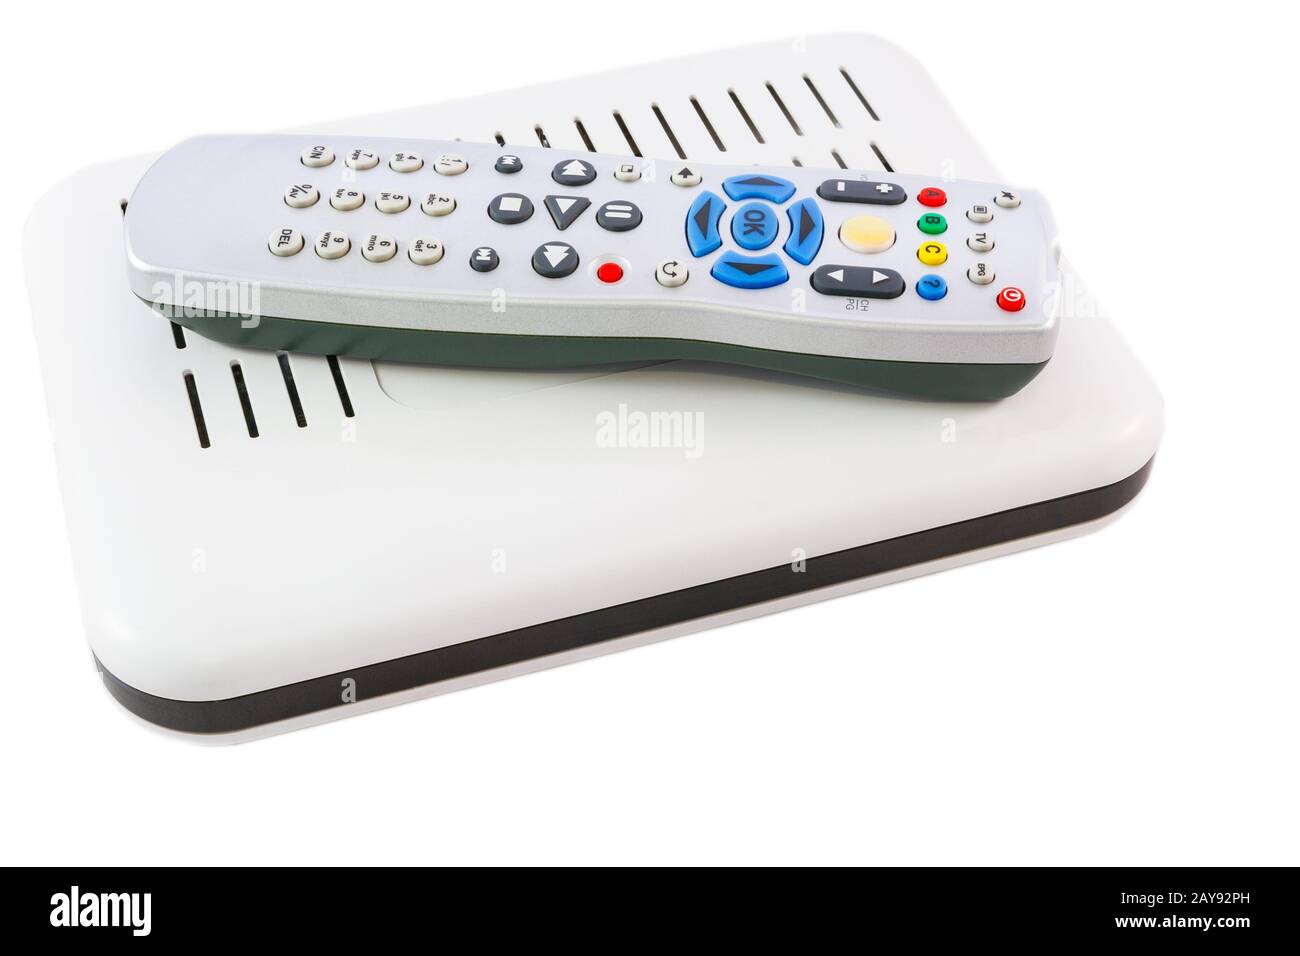 Gestapelte Fernbedienung und Receiver für Internet-TV auf weißer Seitenansicht Stockfoto